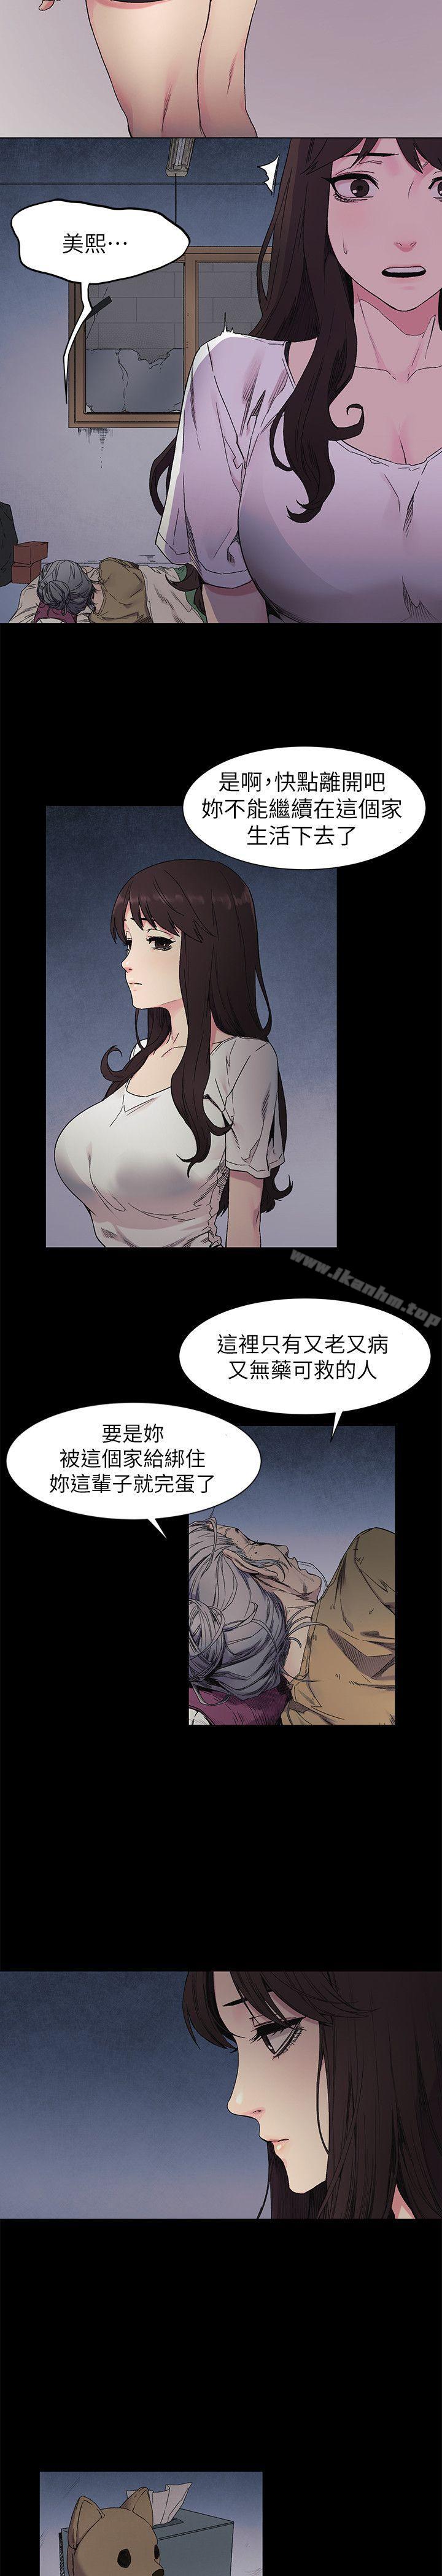 衝突漫画 免费阅读 第24话 - 女王的真面目 7.jpg